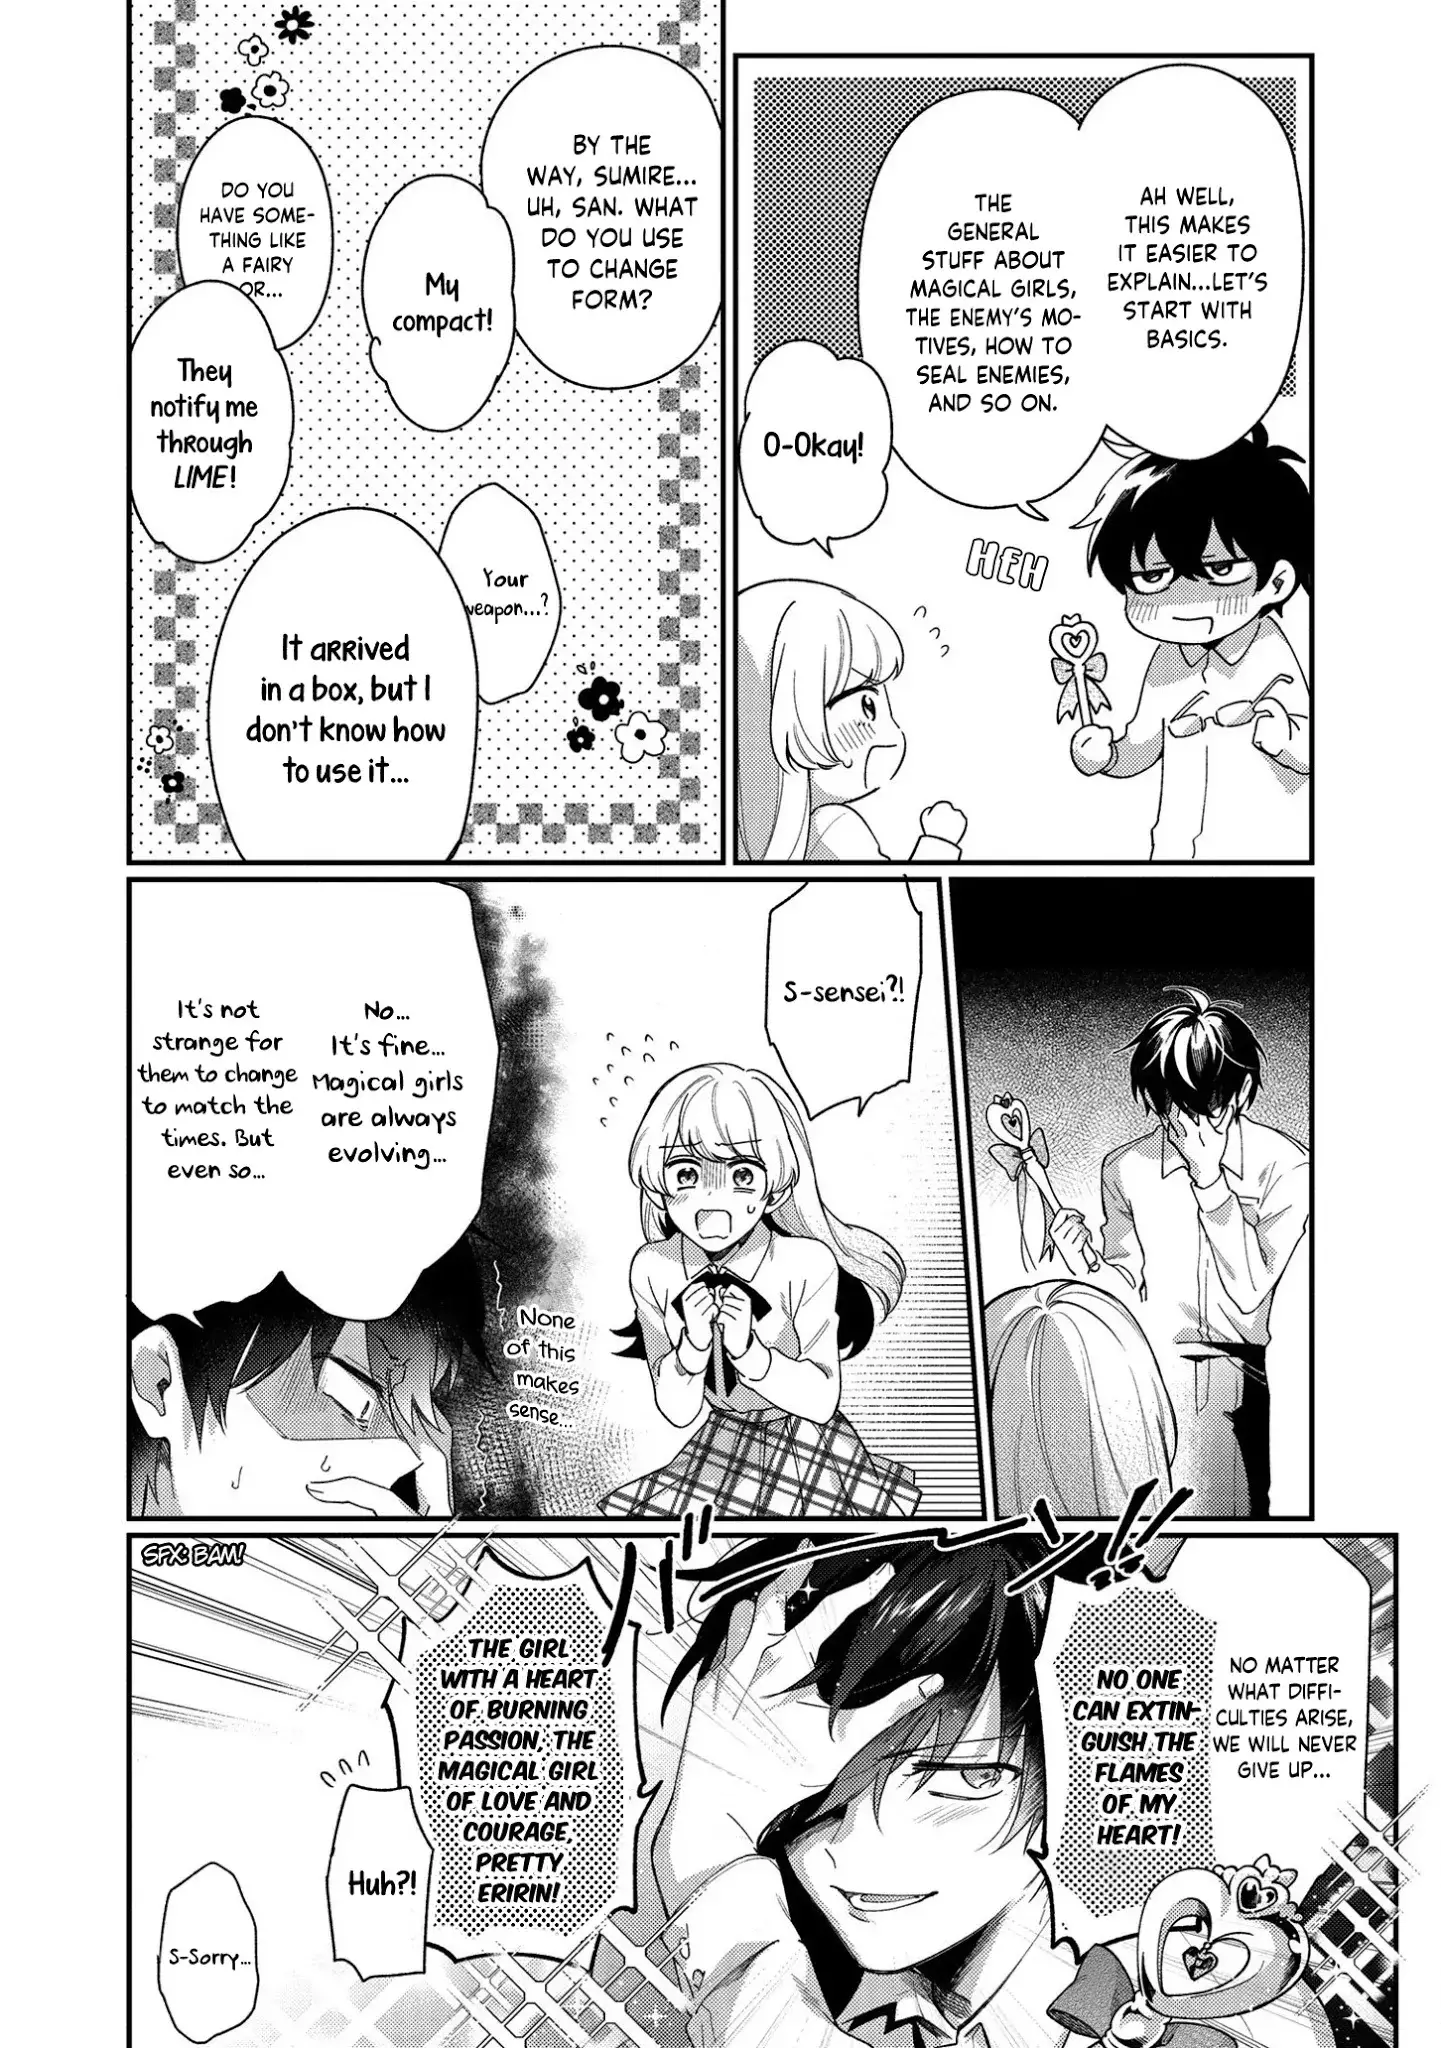 No Match For Aoi-Kun - 1 page 18